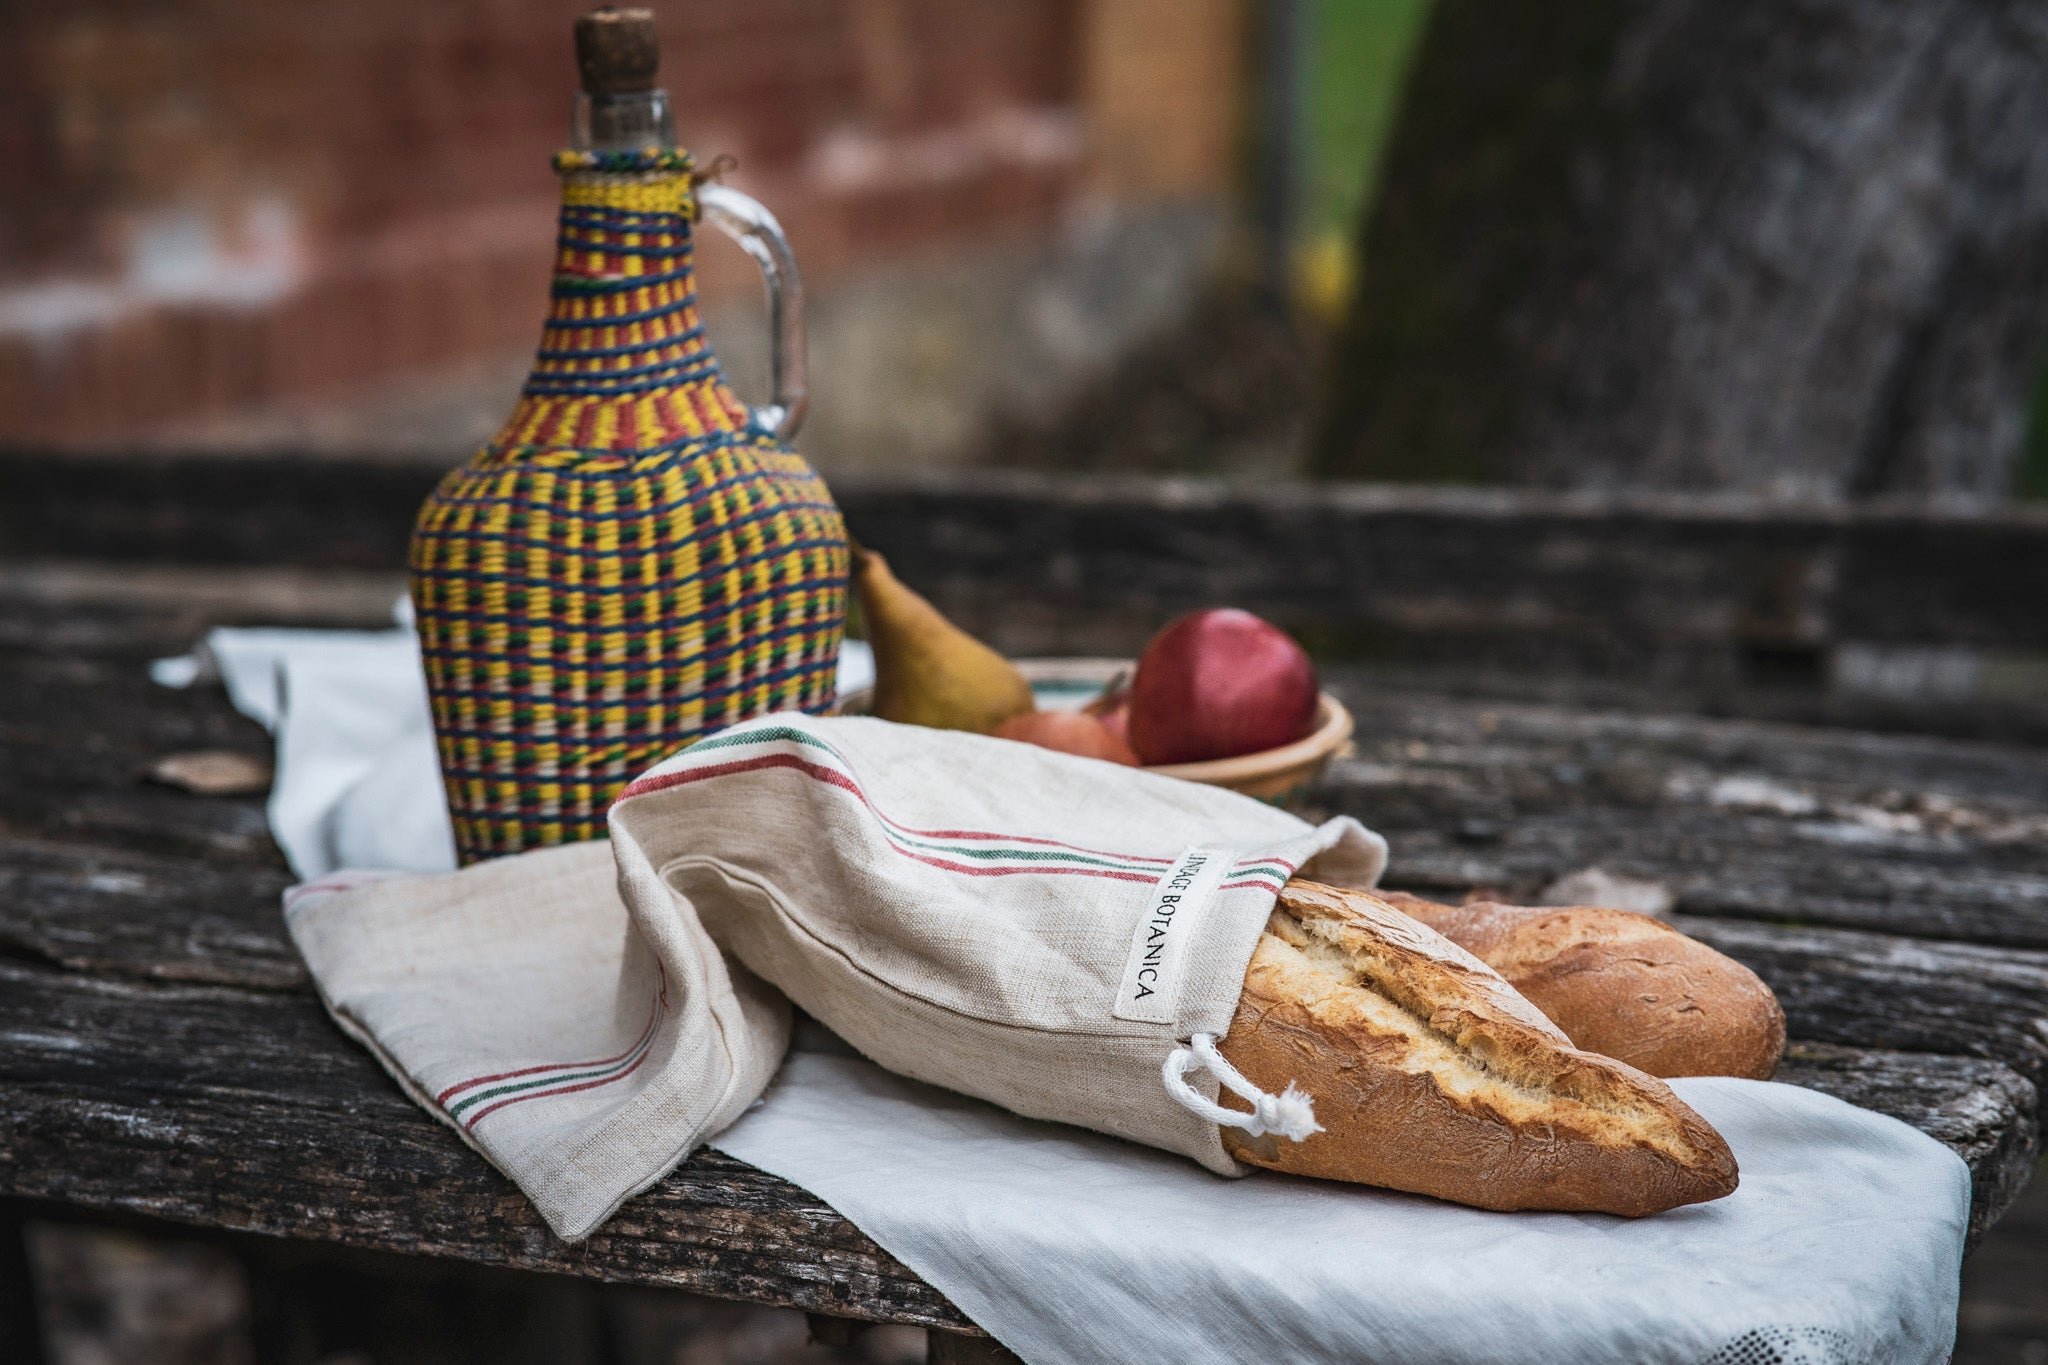 Bag: Handwoven antique and vintage hemp baguette bread bags - BG227